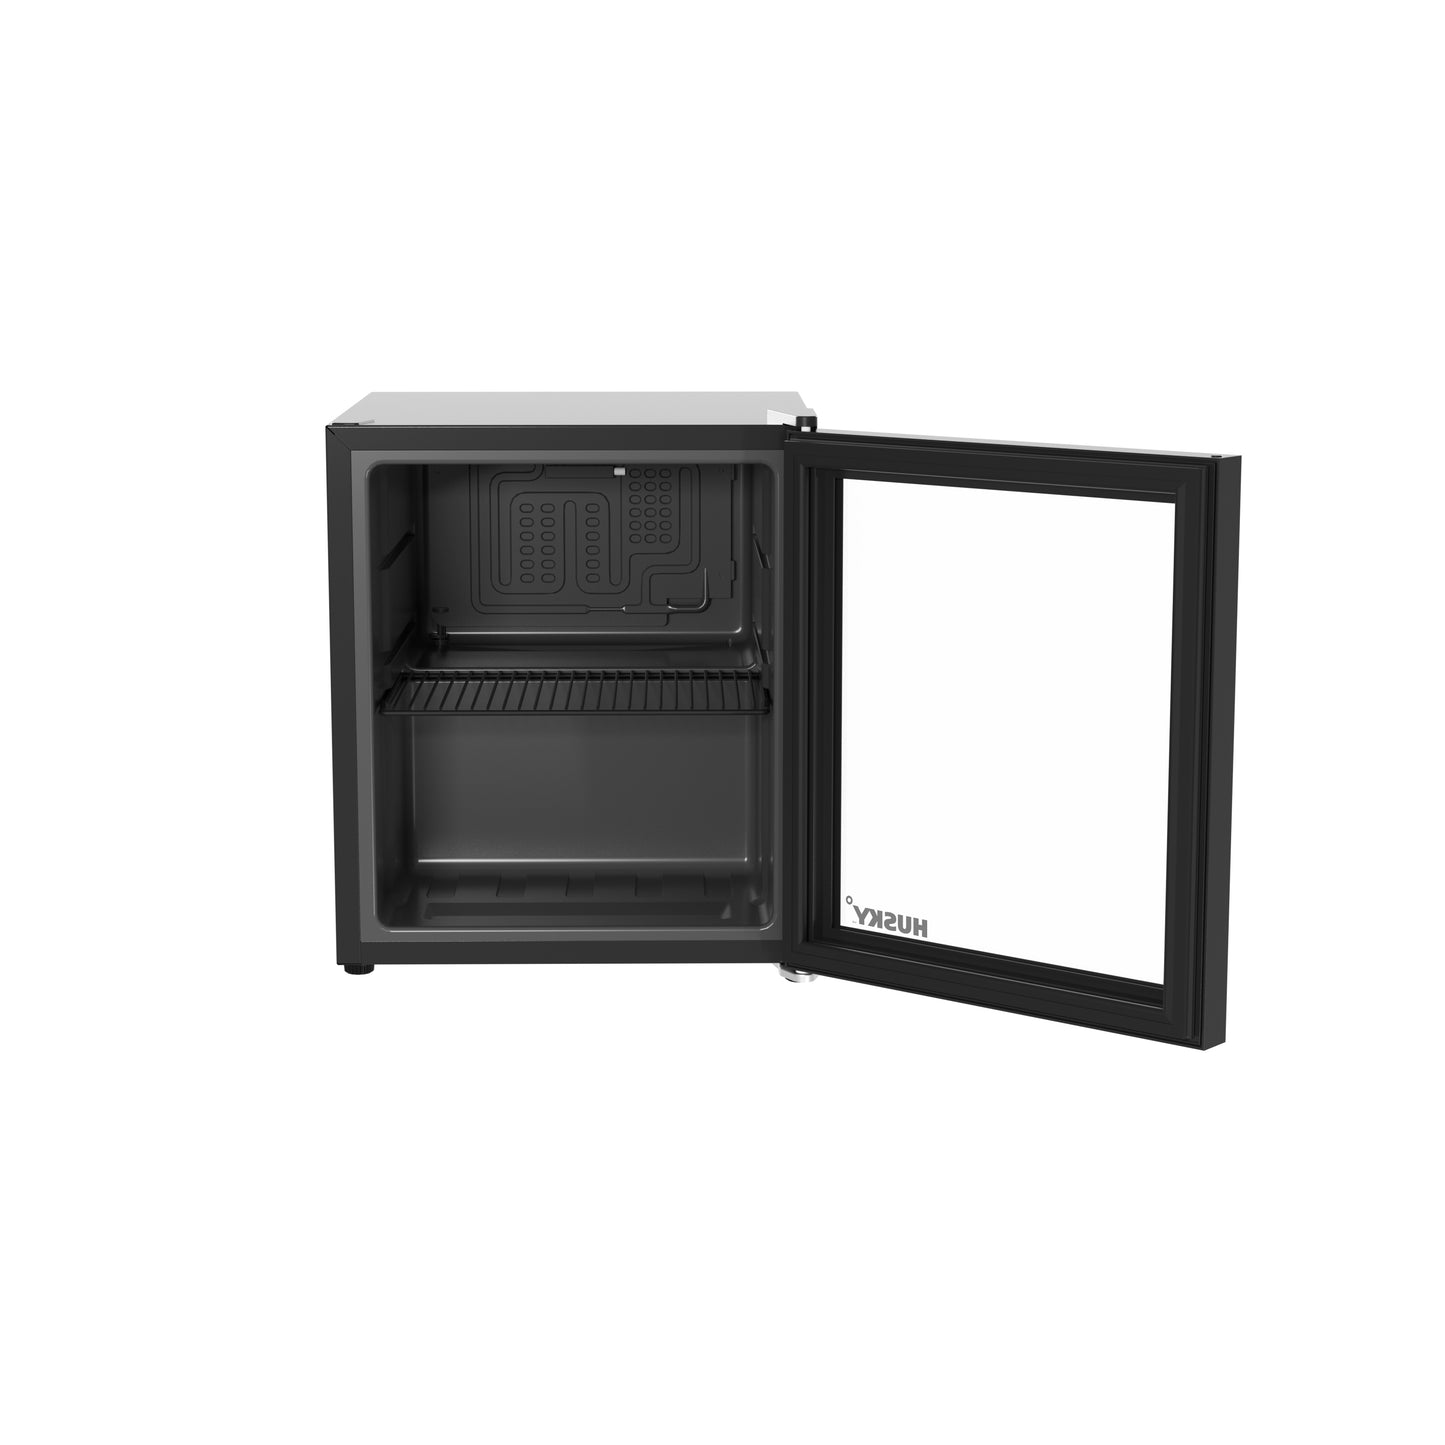 Husky 46L Beverage Refrigerator 1.6 C.ft. Freestanding Counter-Top Mini Fridge With Glass Door in Black